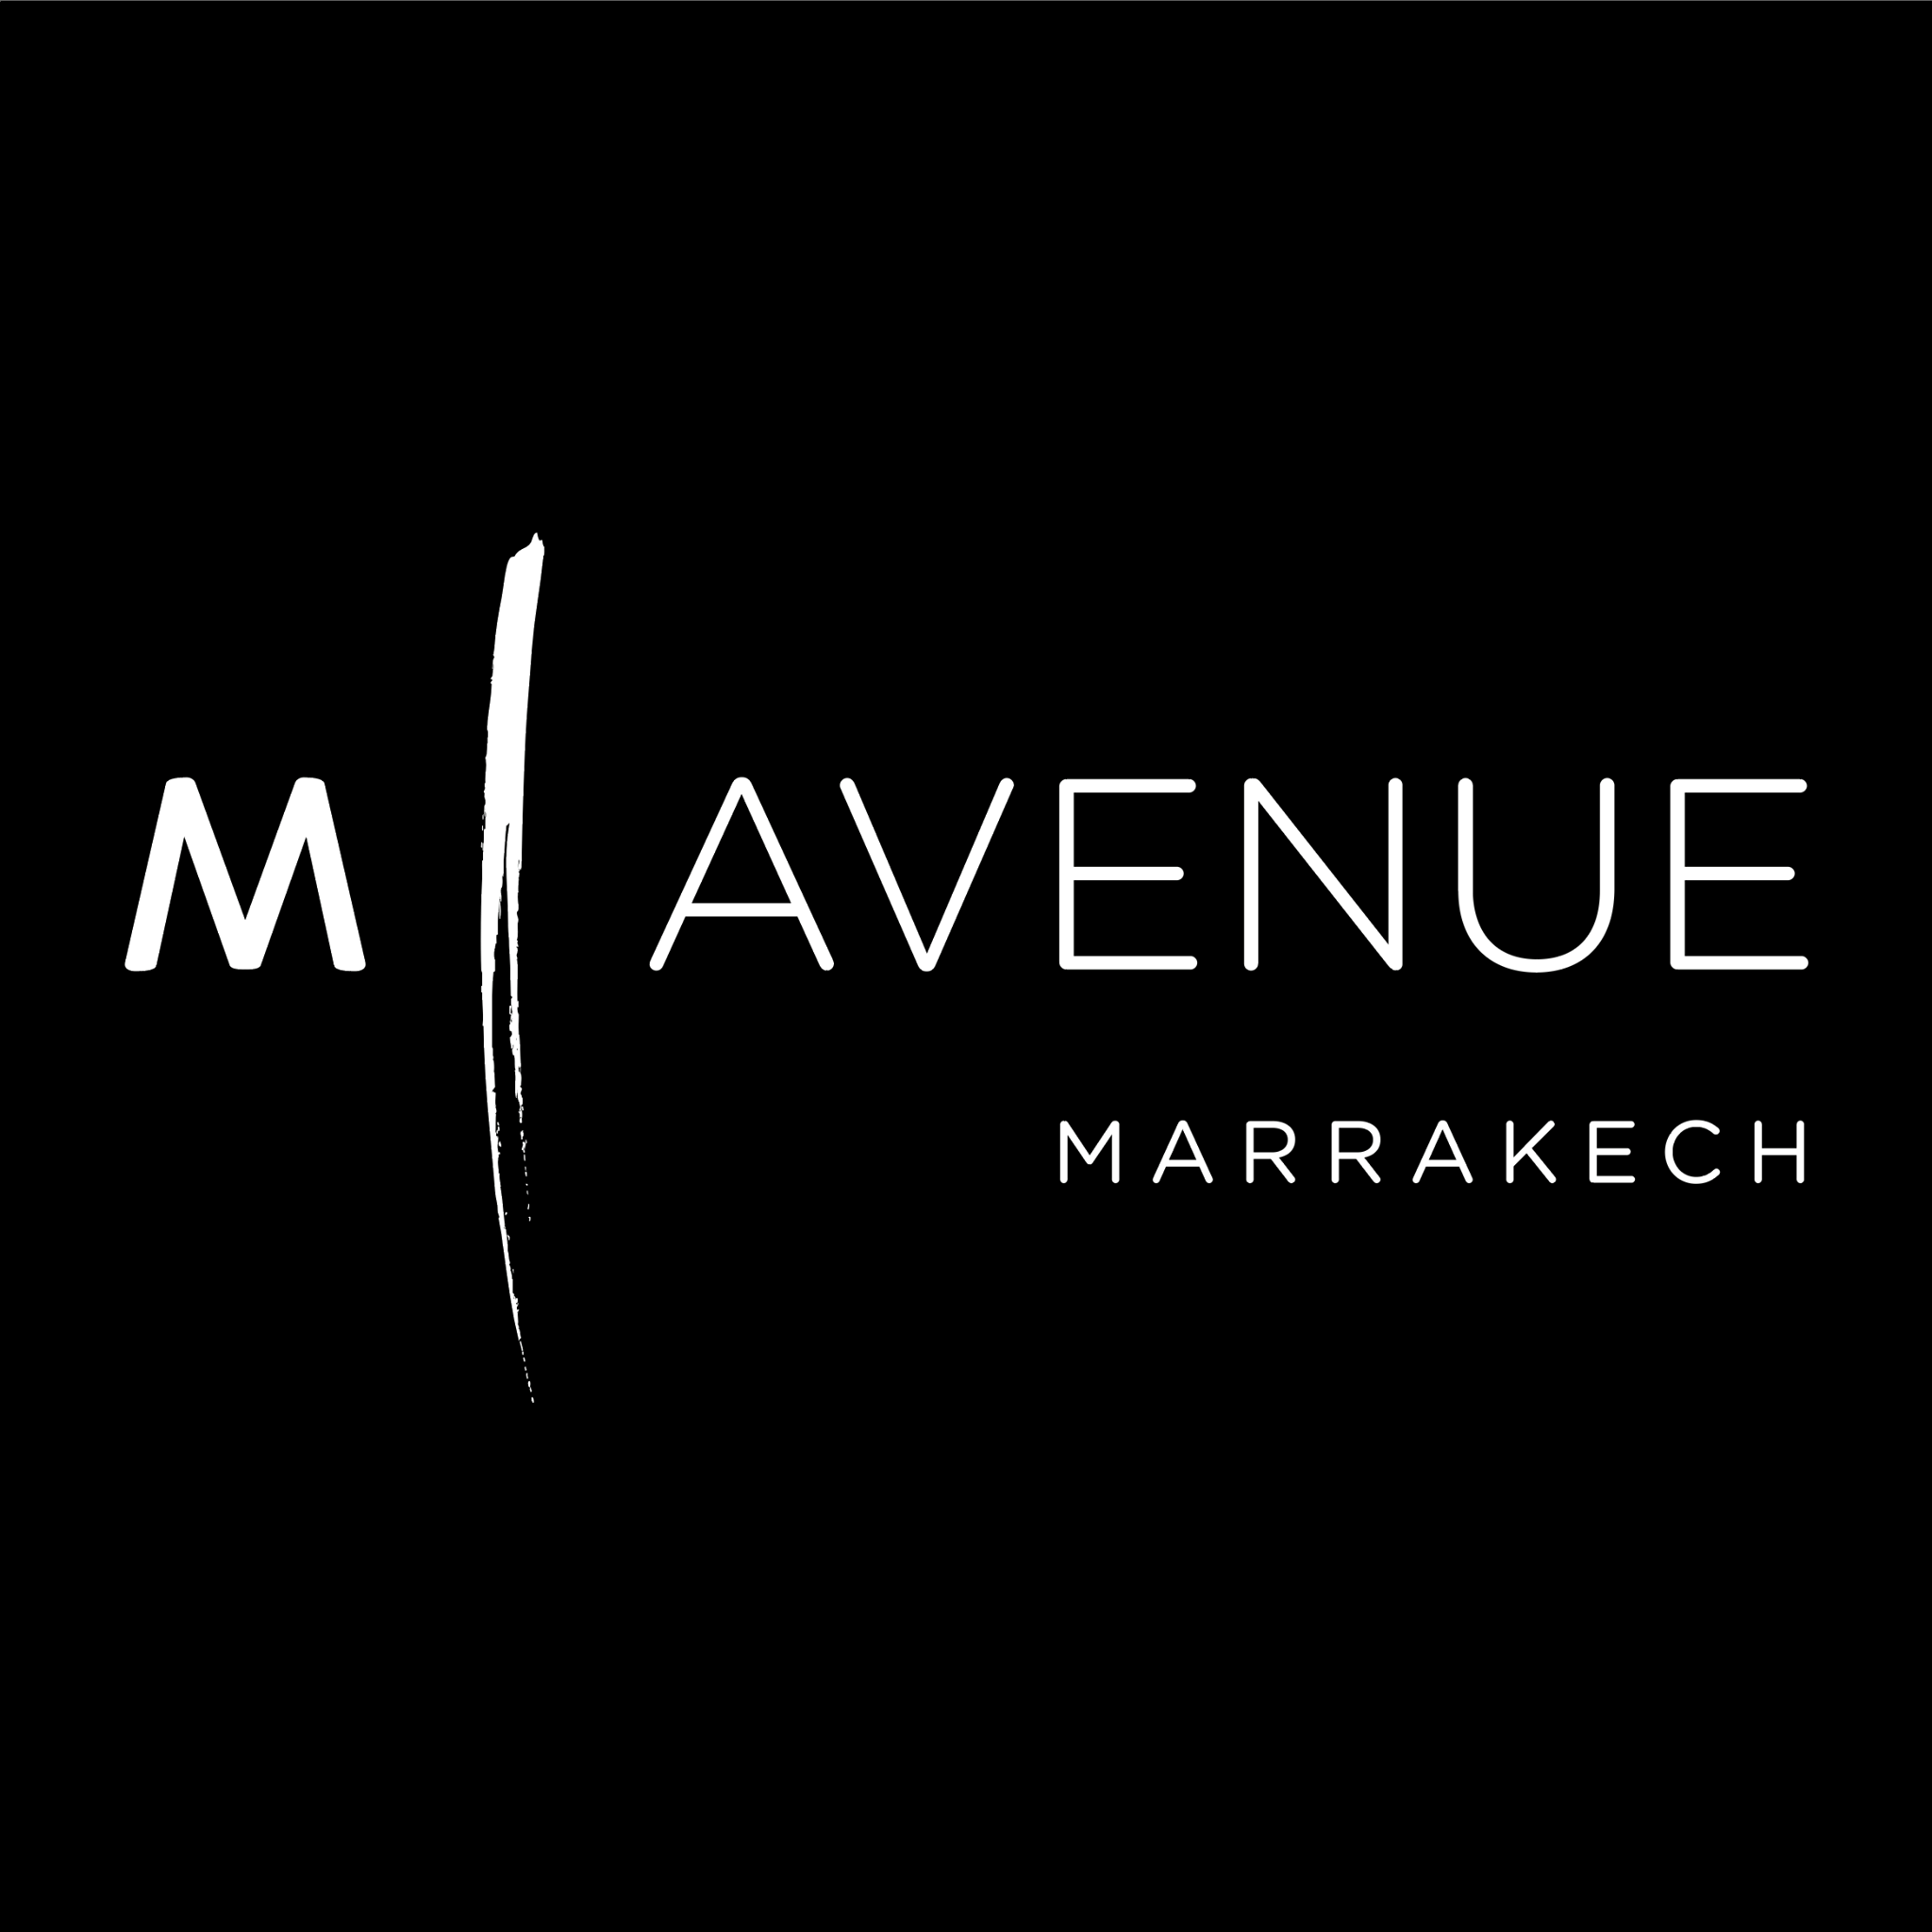 M Avenue Marrakech